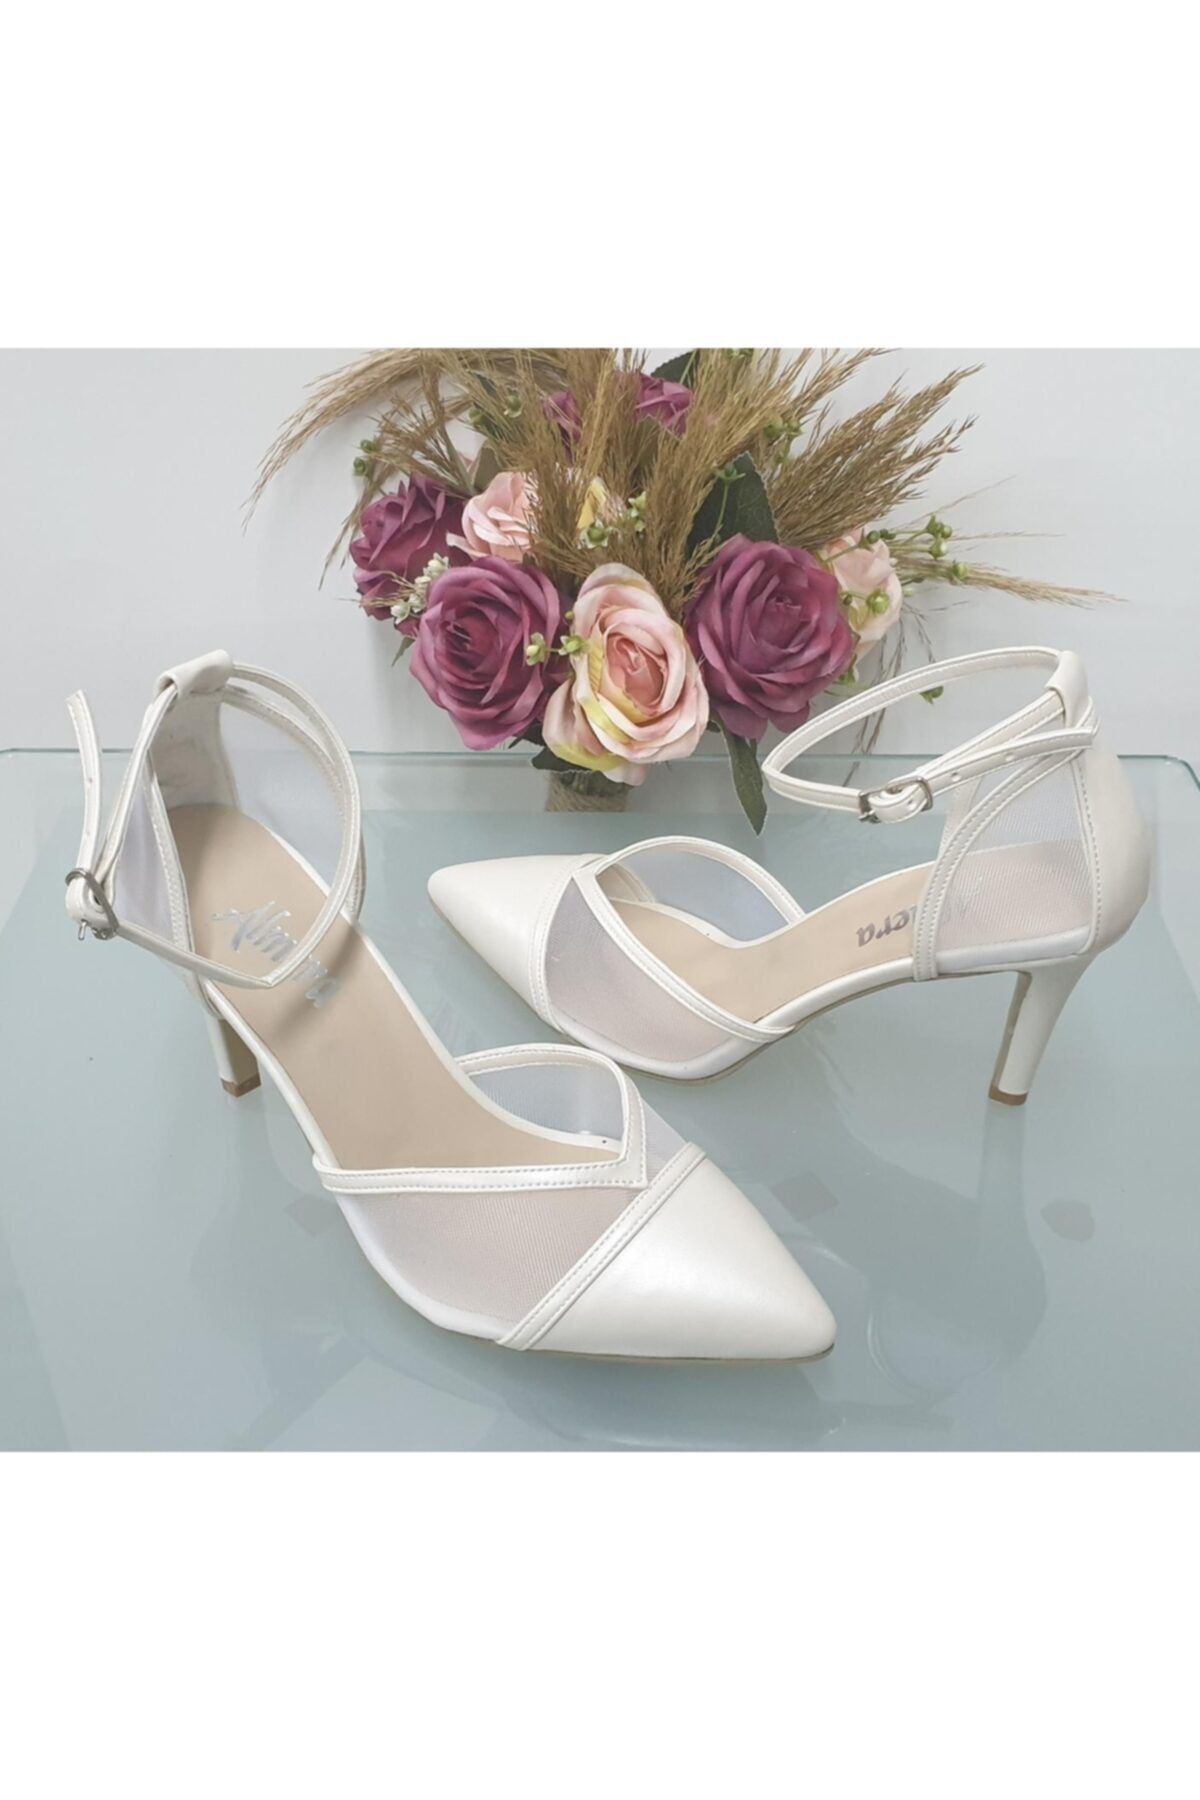 Almera's Shoes Kadın Beyaz Sivri Topuklu Stiletto Abiye Ayakkabı Almeras001